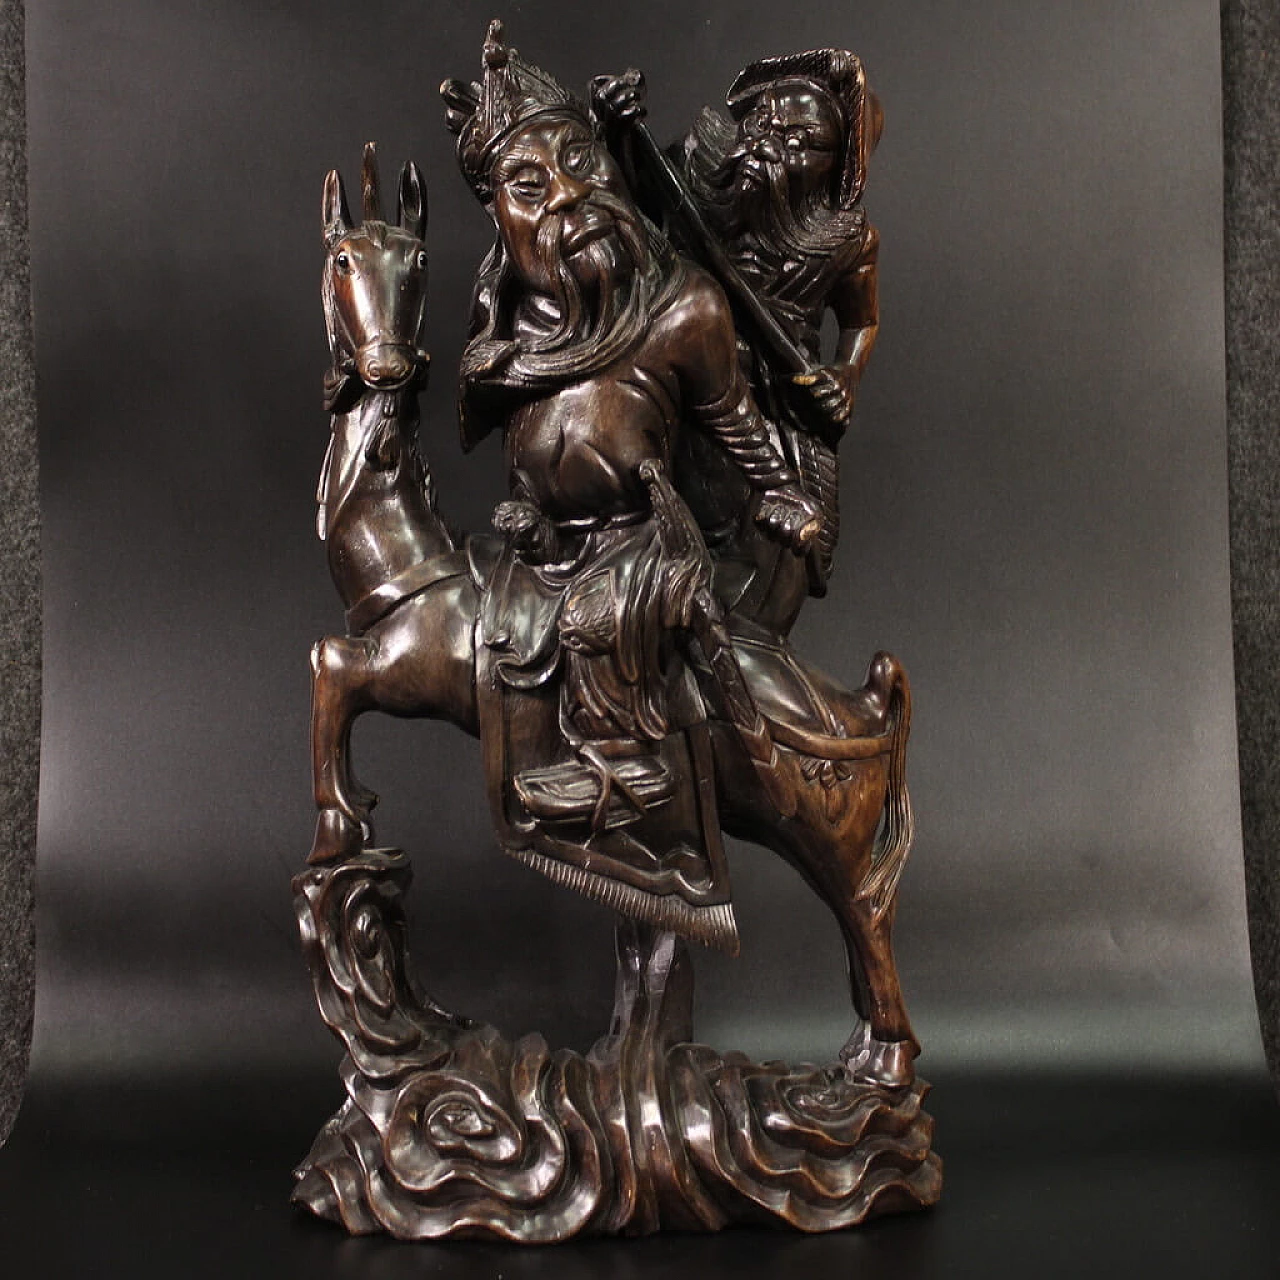 Guerriero a cavallo e figura, scultura in legno esotico 1